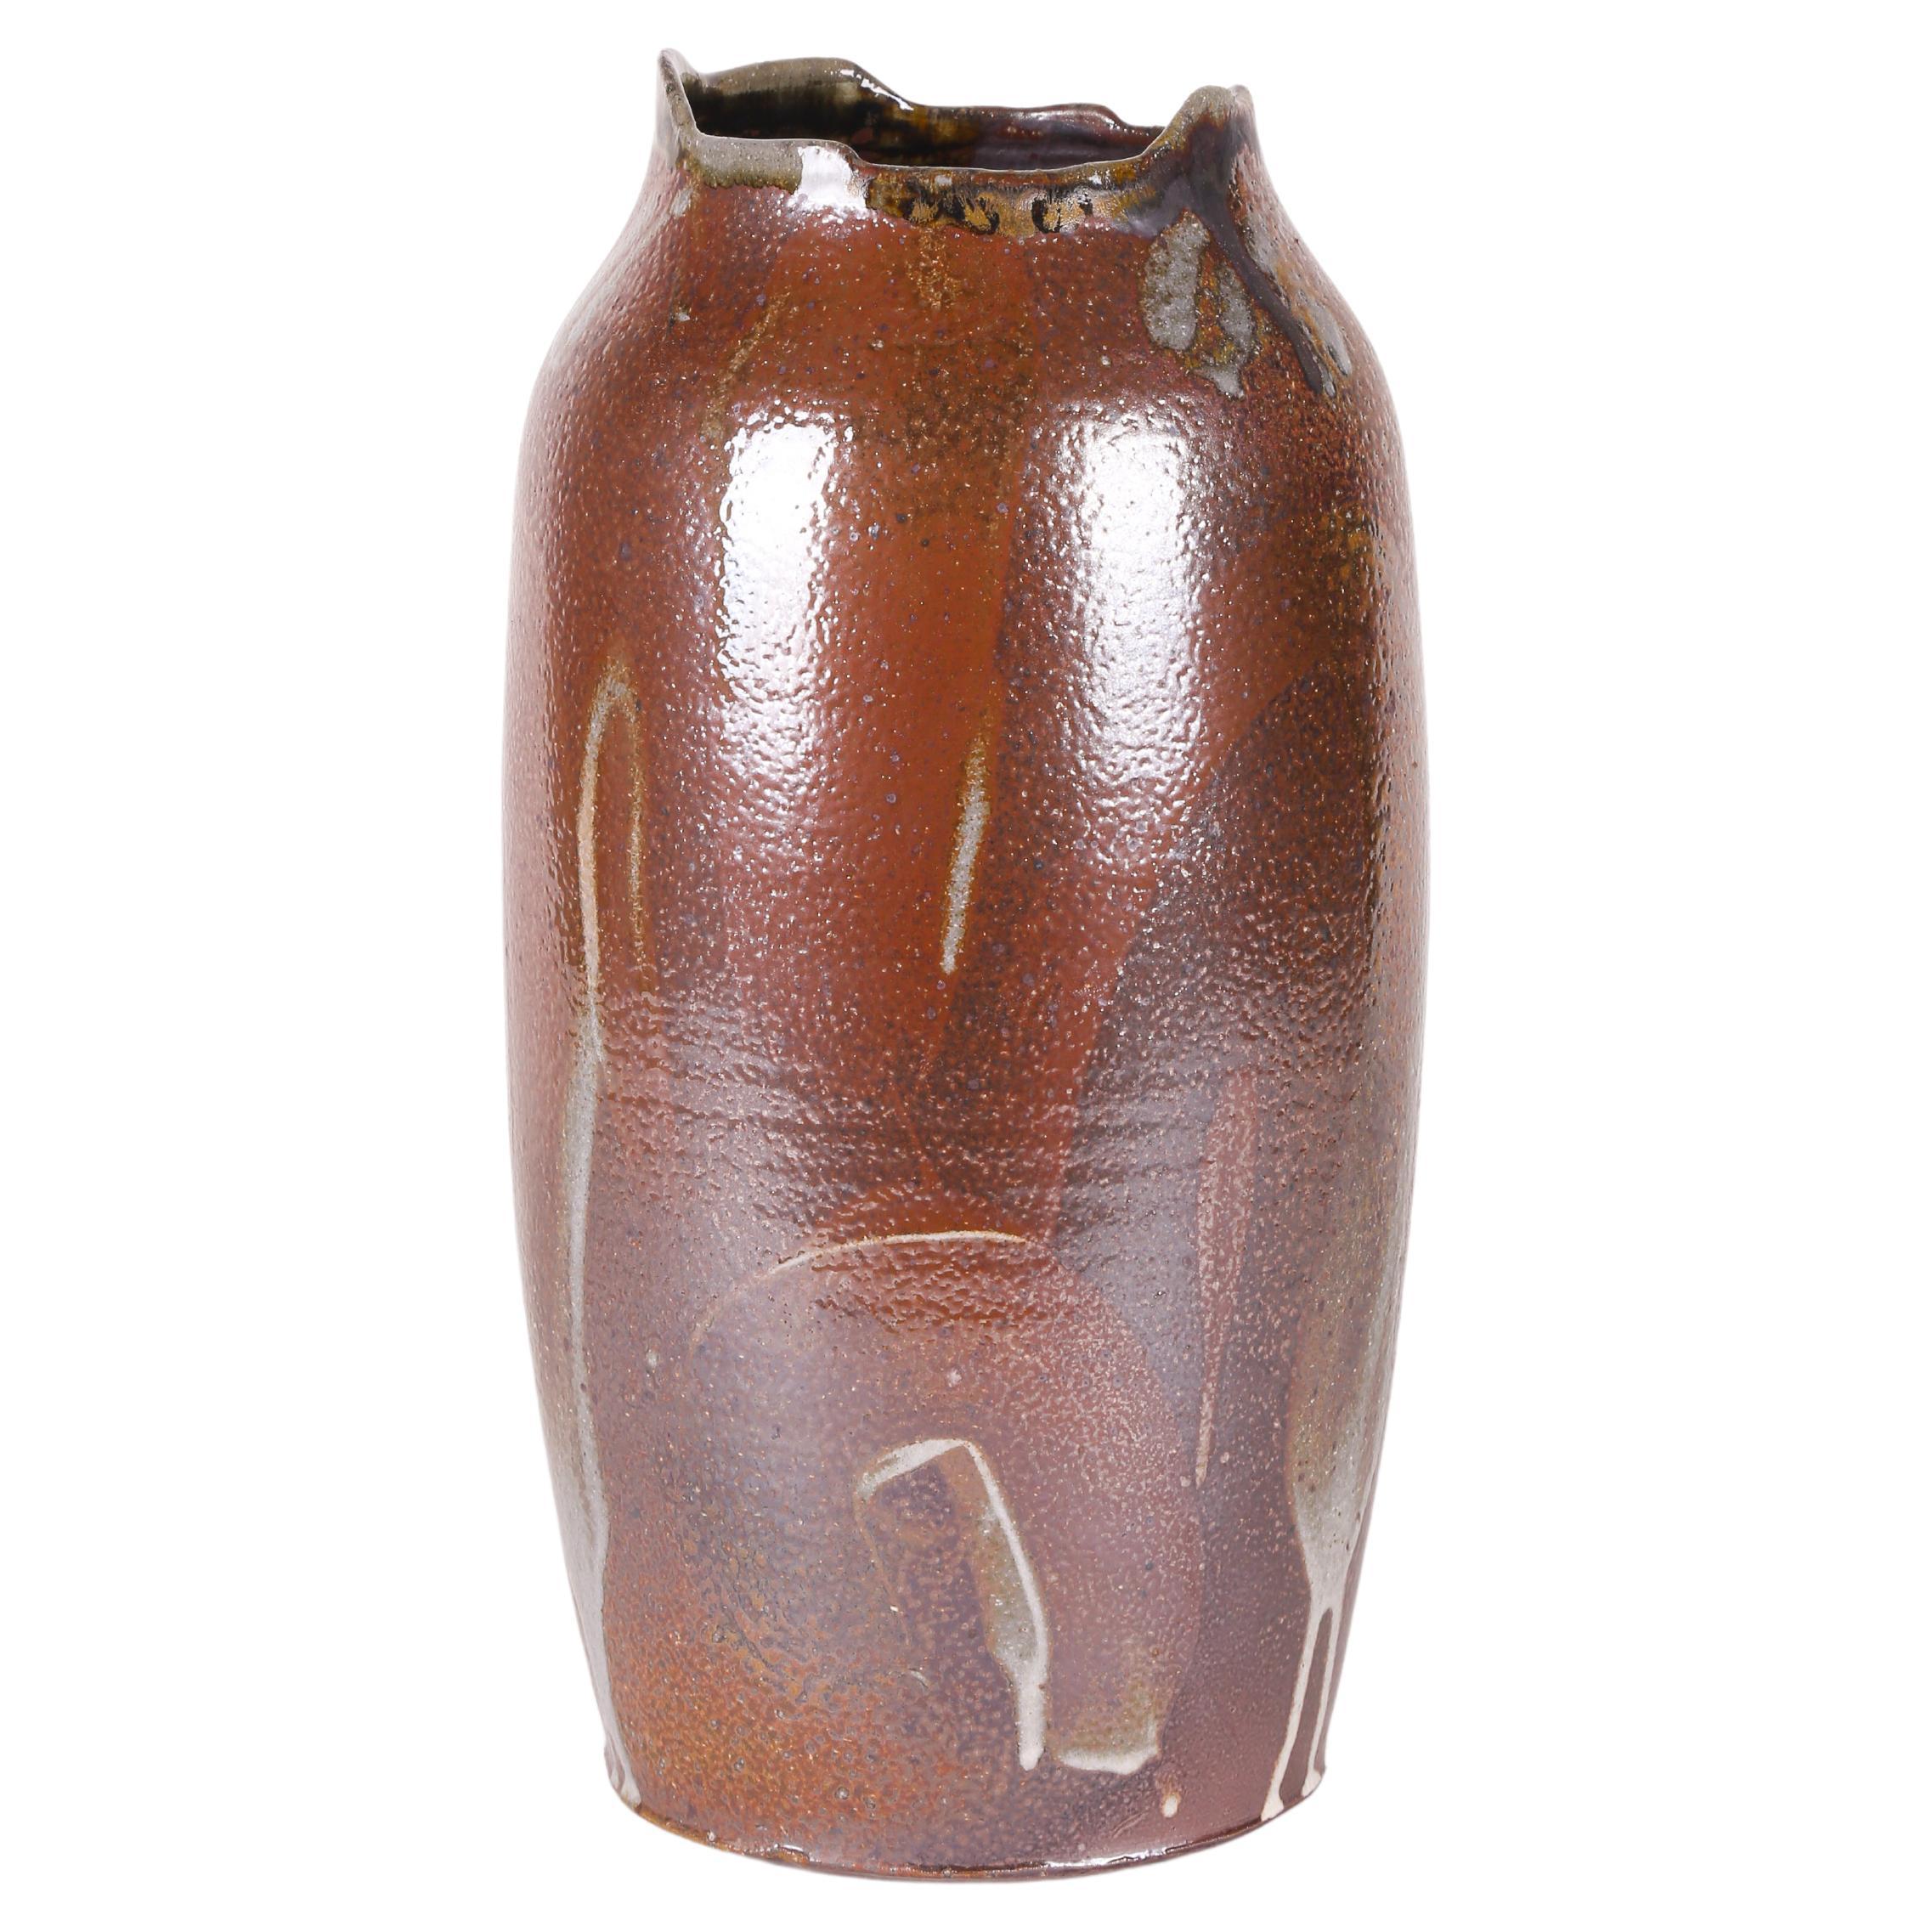 Vase aus glasiertem Steinzeug von Ebitenyefa Baralaye, einem zeitgenössischen Keramiker